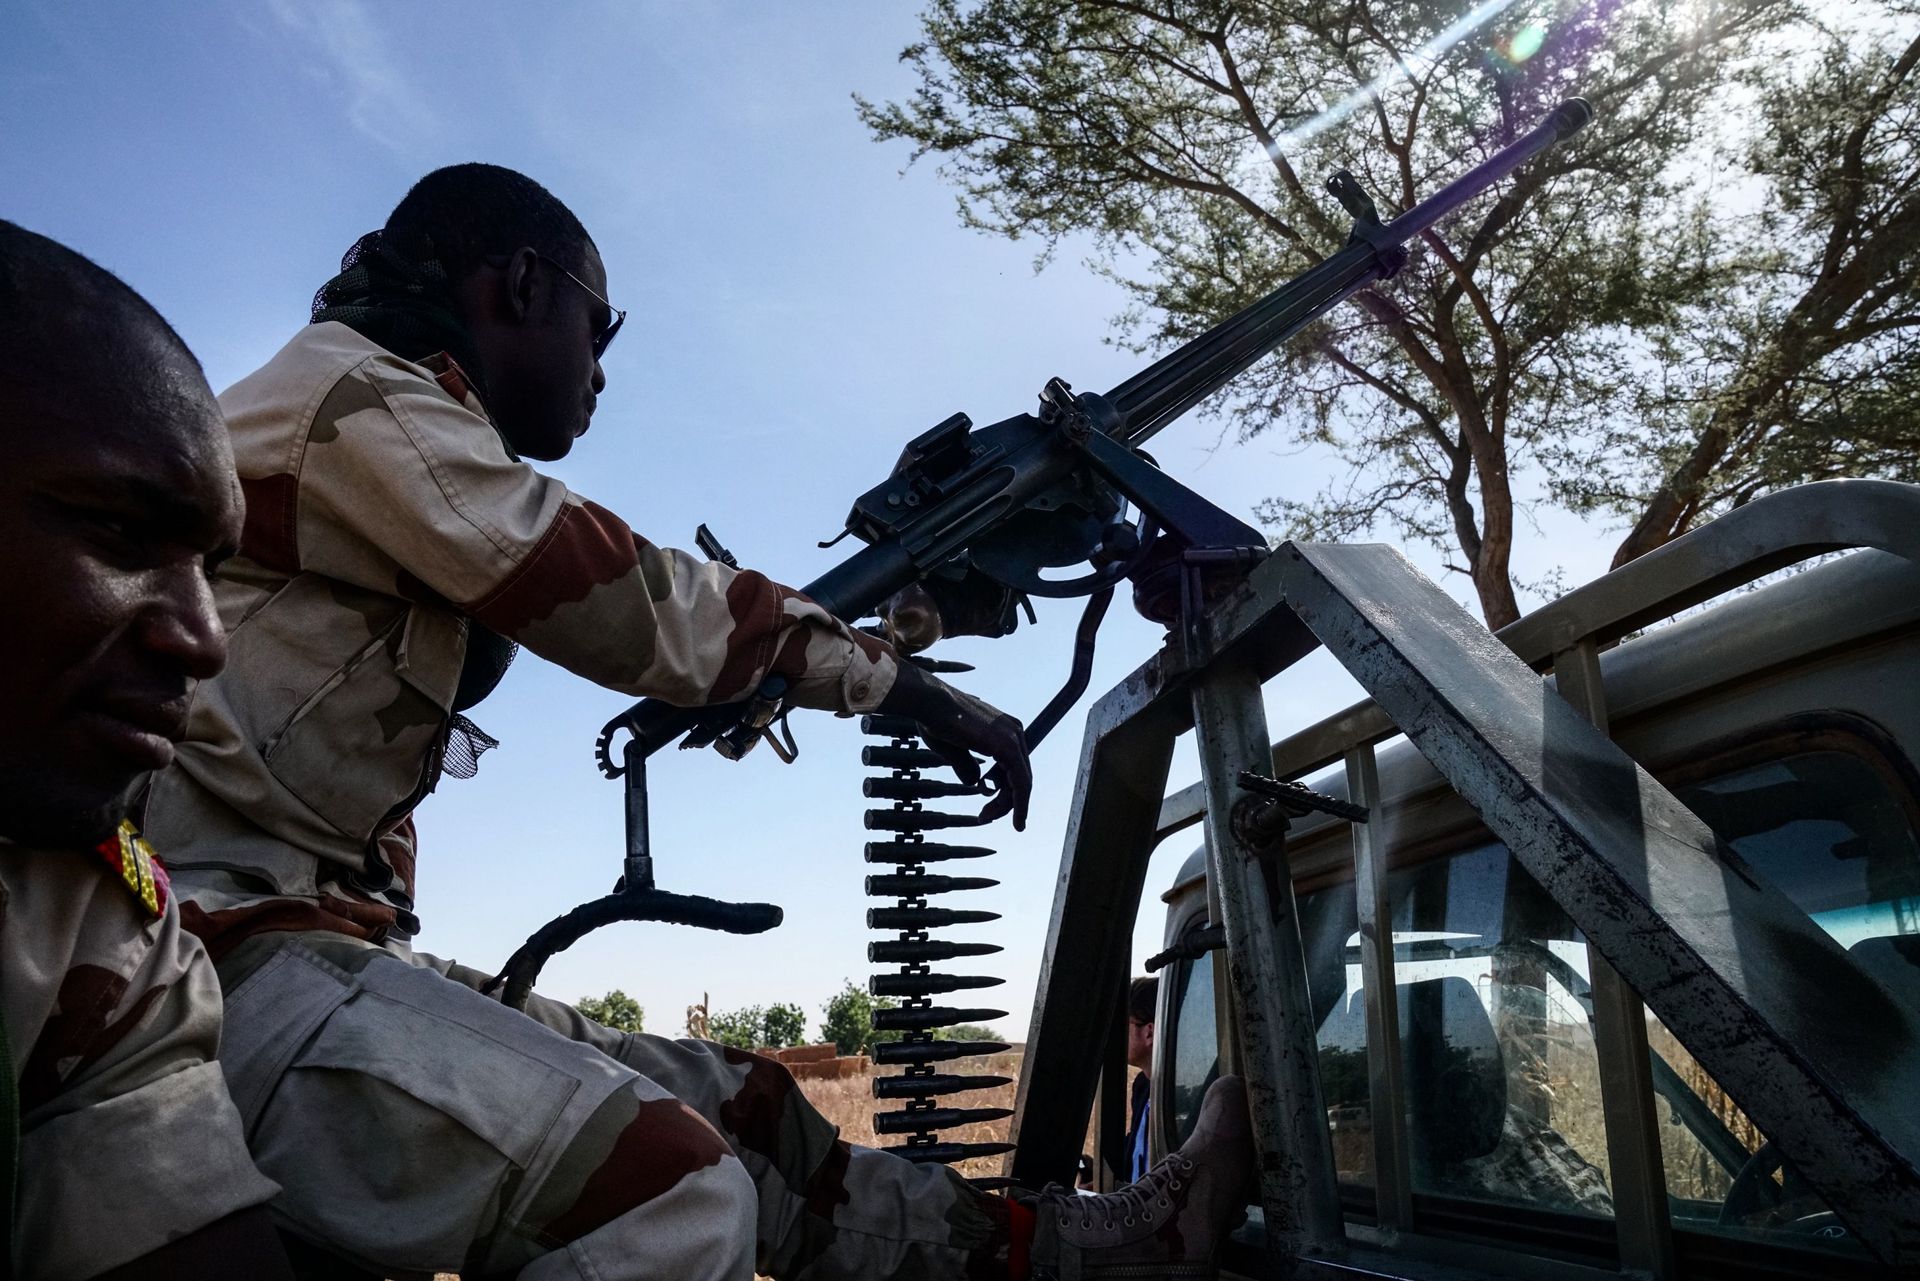 Au moins 37 civils tués dans une nouvelle attaque dans l'ouest du Niger